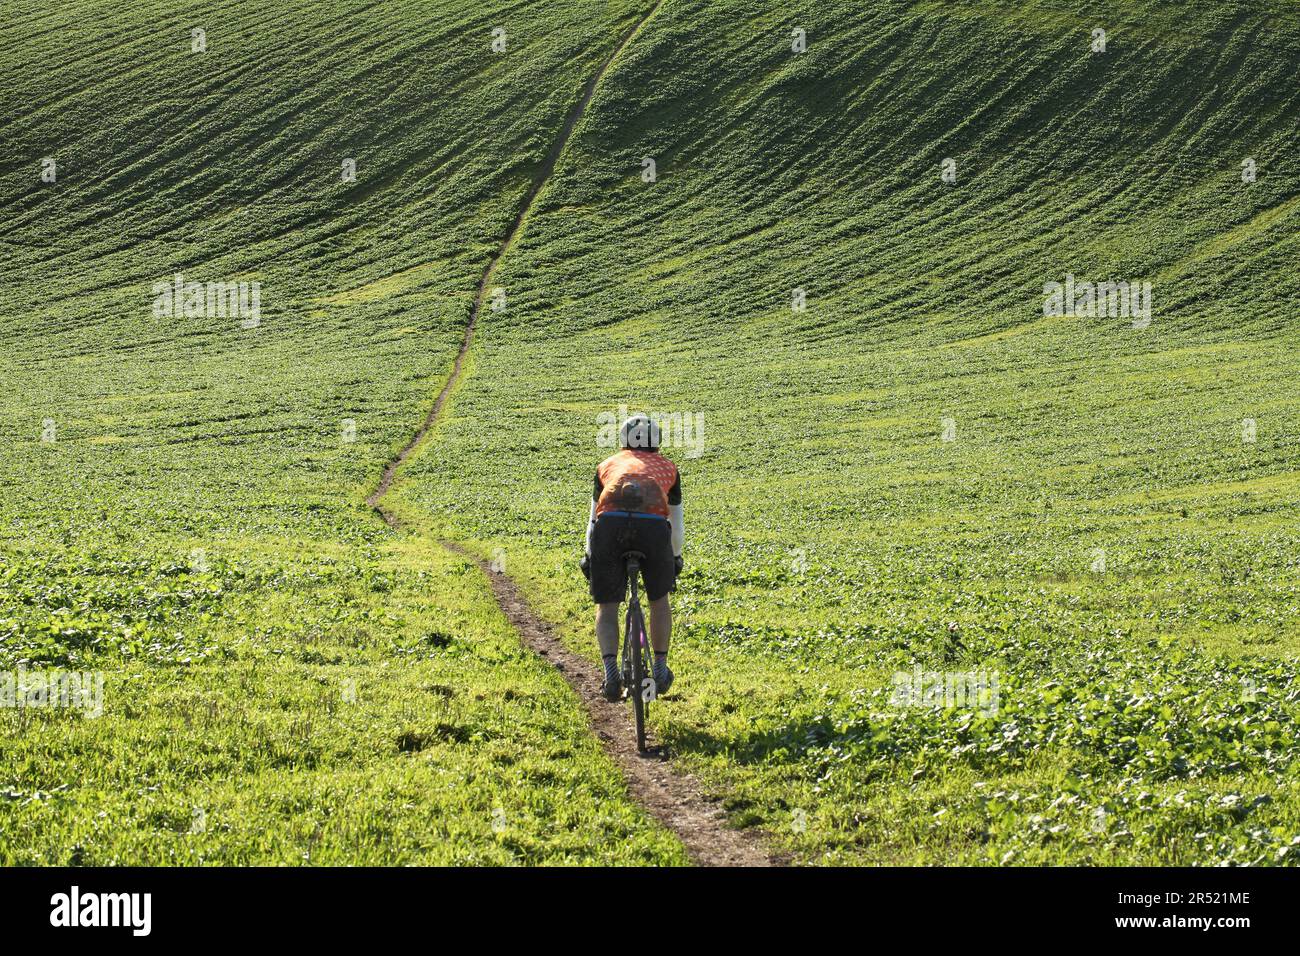 Un cycliste descend une colline escarpée dans une vallée du parc national de South Downs, juste au nord de Rotingdean. (Le chemin descend puis remonte !) Banque D'Images